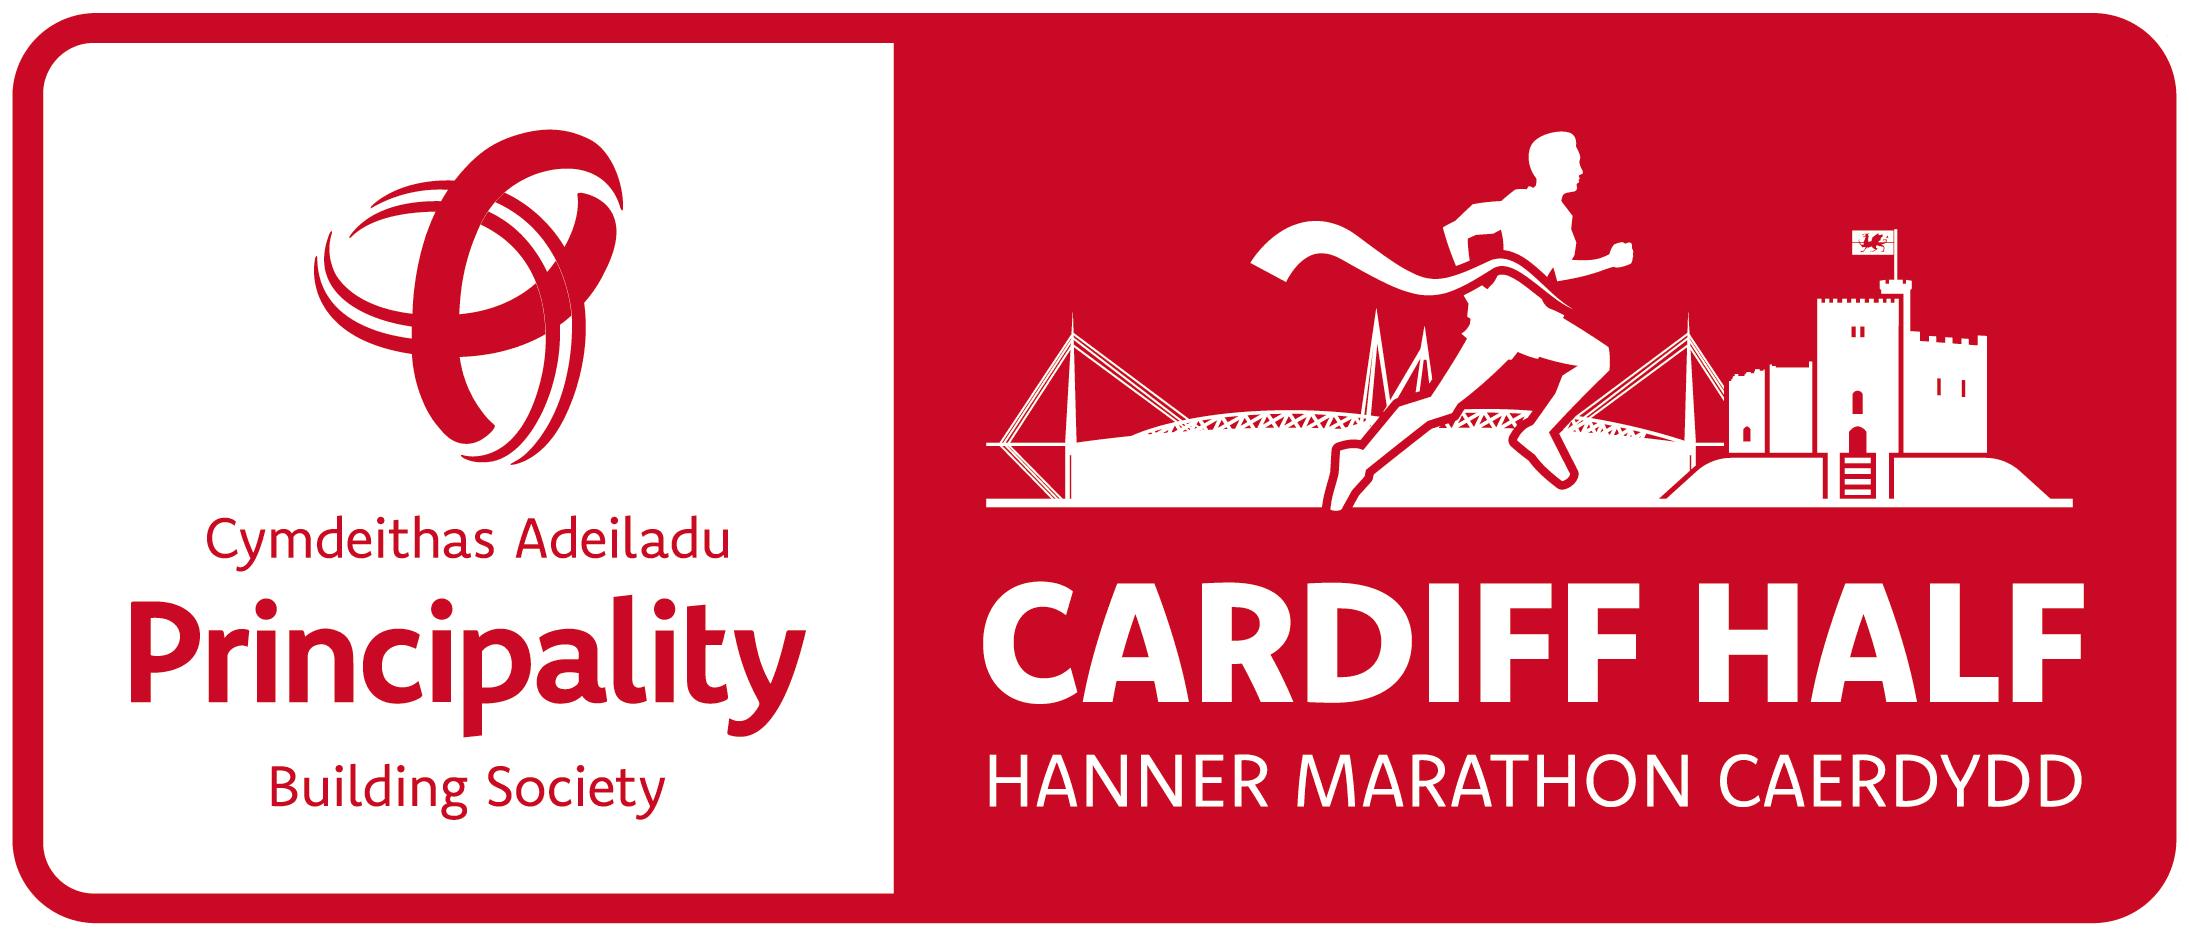 Hanner Marathon Caerdydd